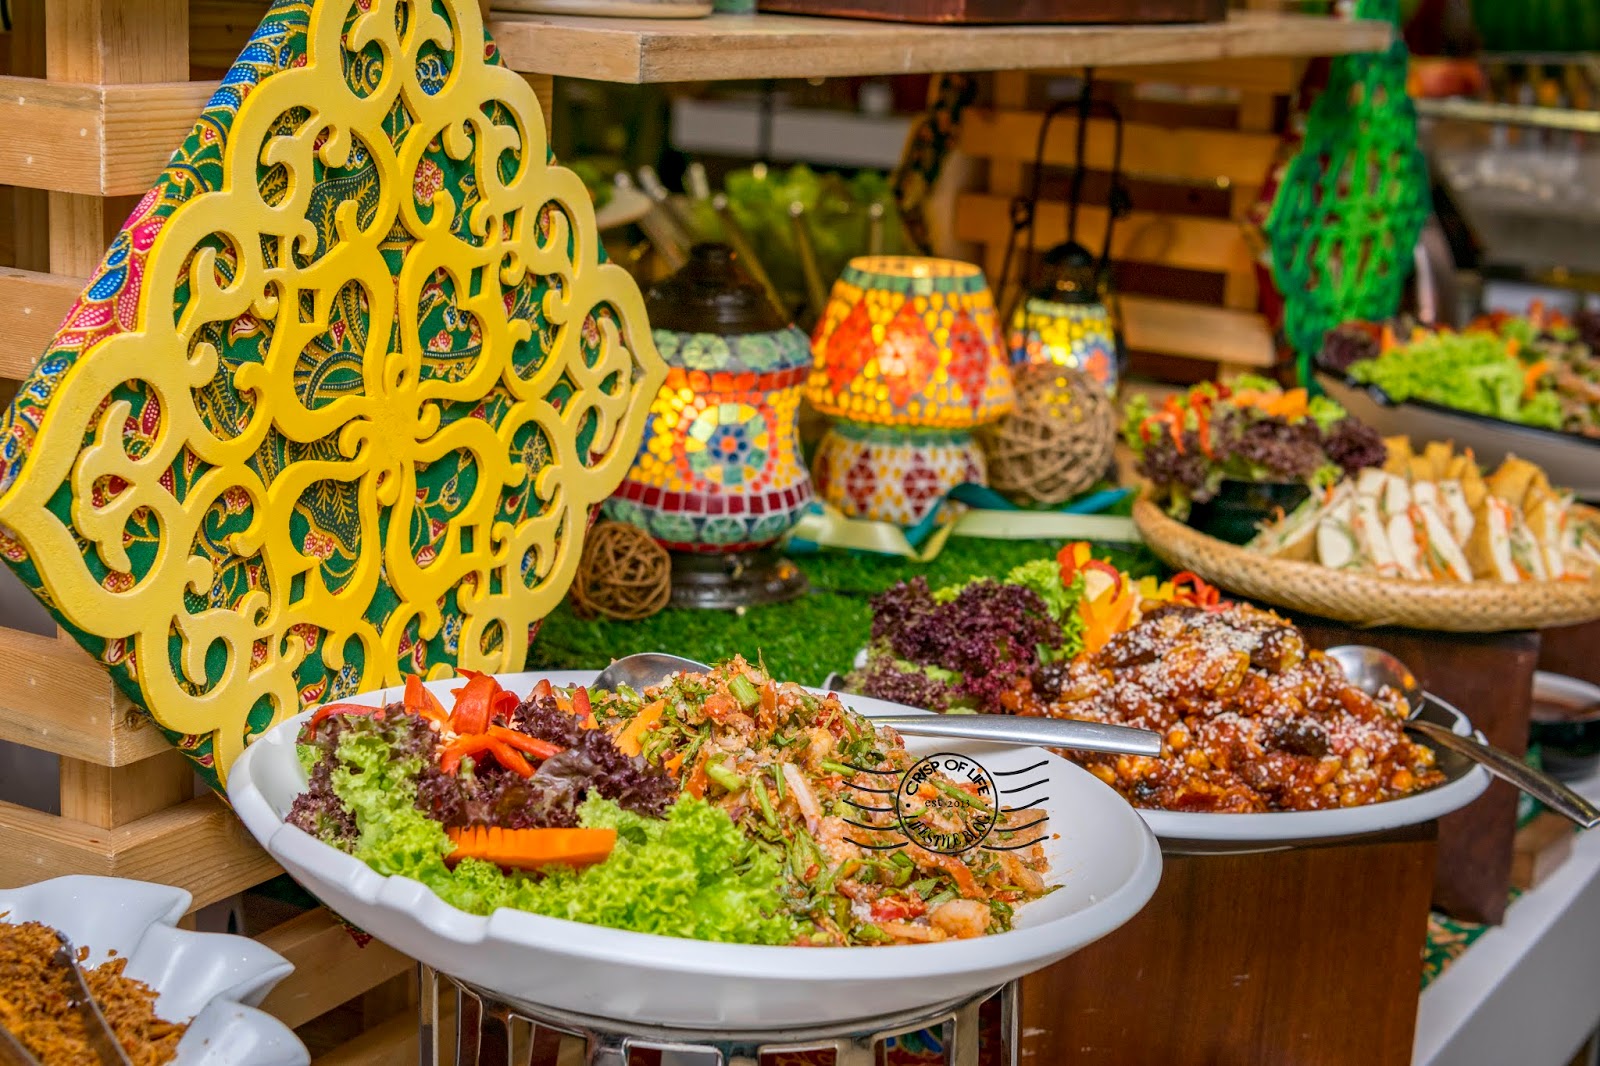 "Citarasa Nusatara" Ramadan 2019 Buffet @ Olive Tree Hotel Penang